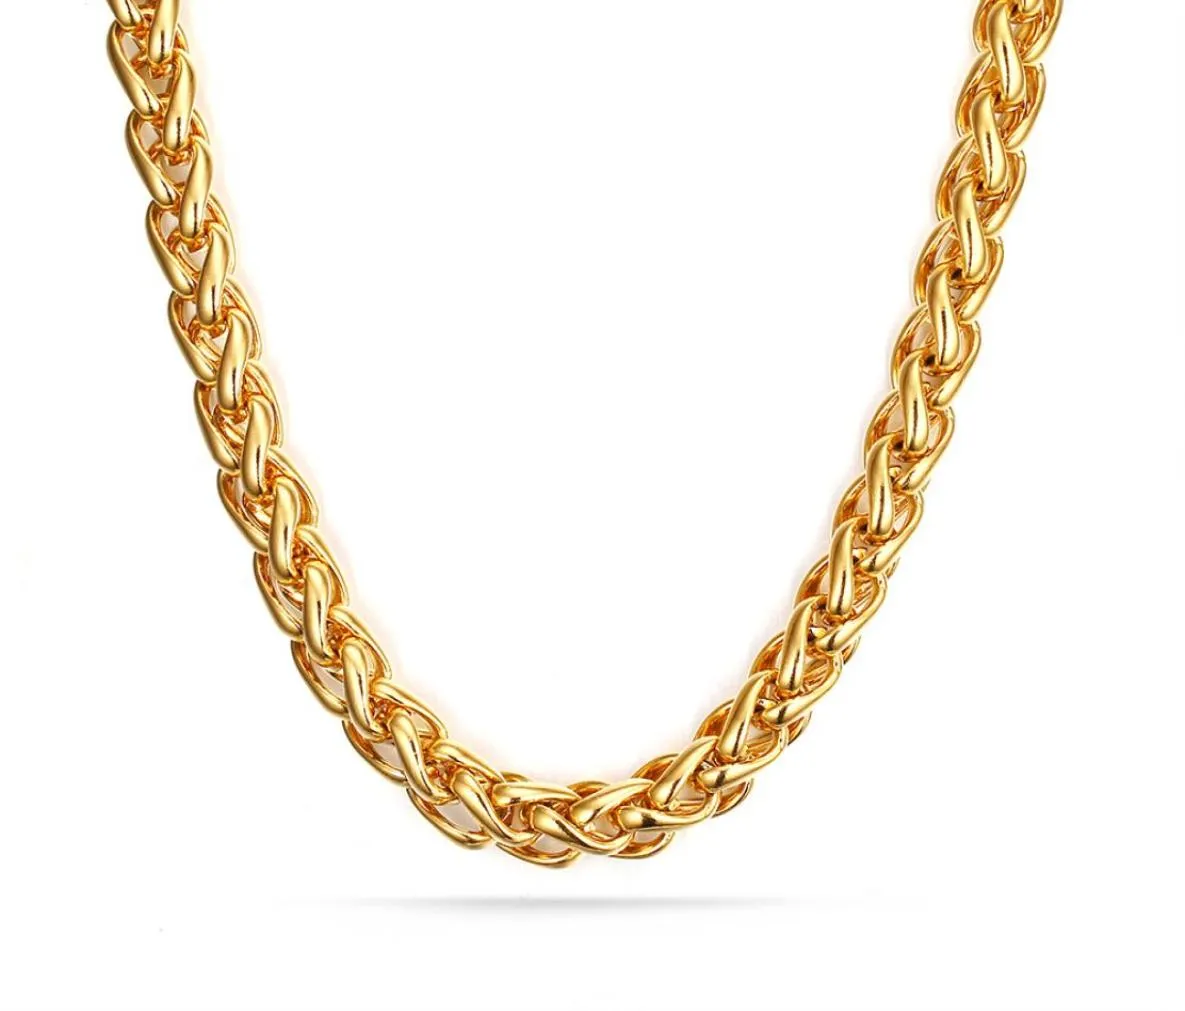 Excepcional más vendida de oro de 7 mm de acero inoxidable ED Wheat Braid Cabecillo de la cadena de bordillo 28quot Nuevo diseño para hombres0396442783